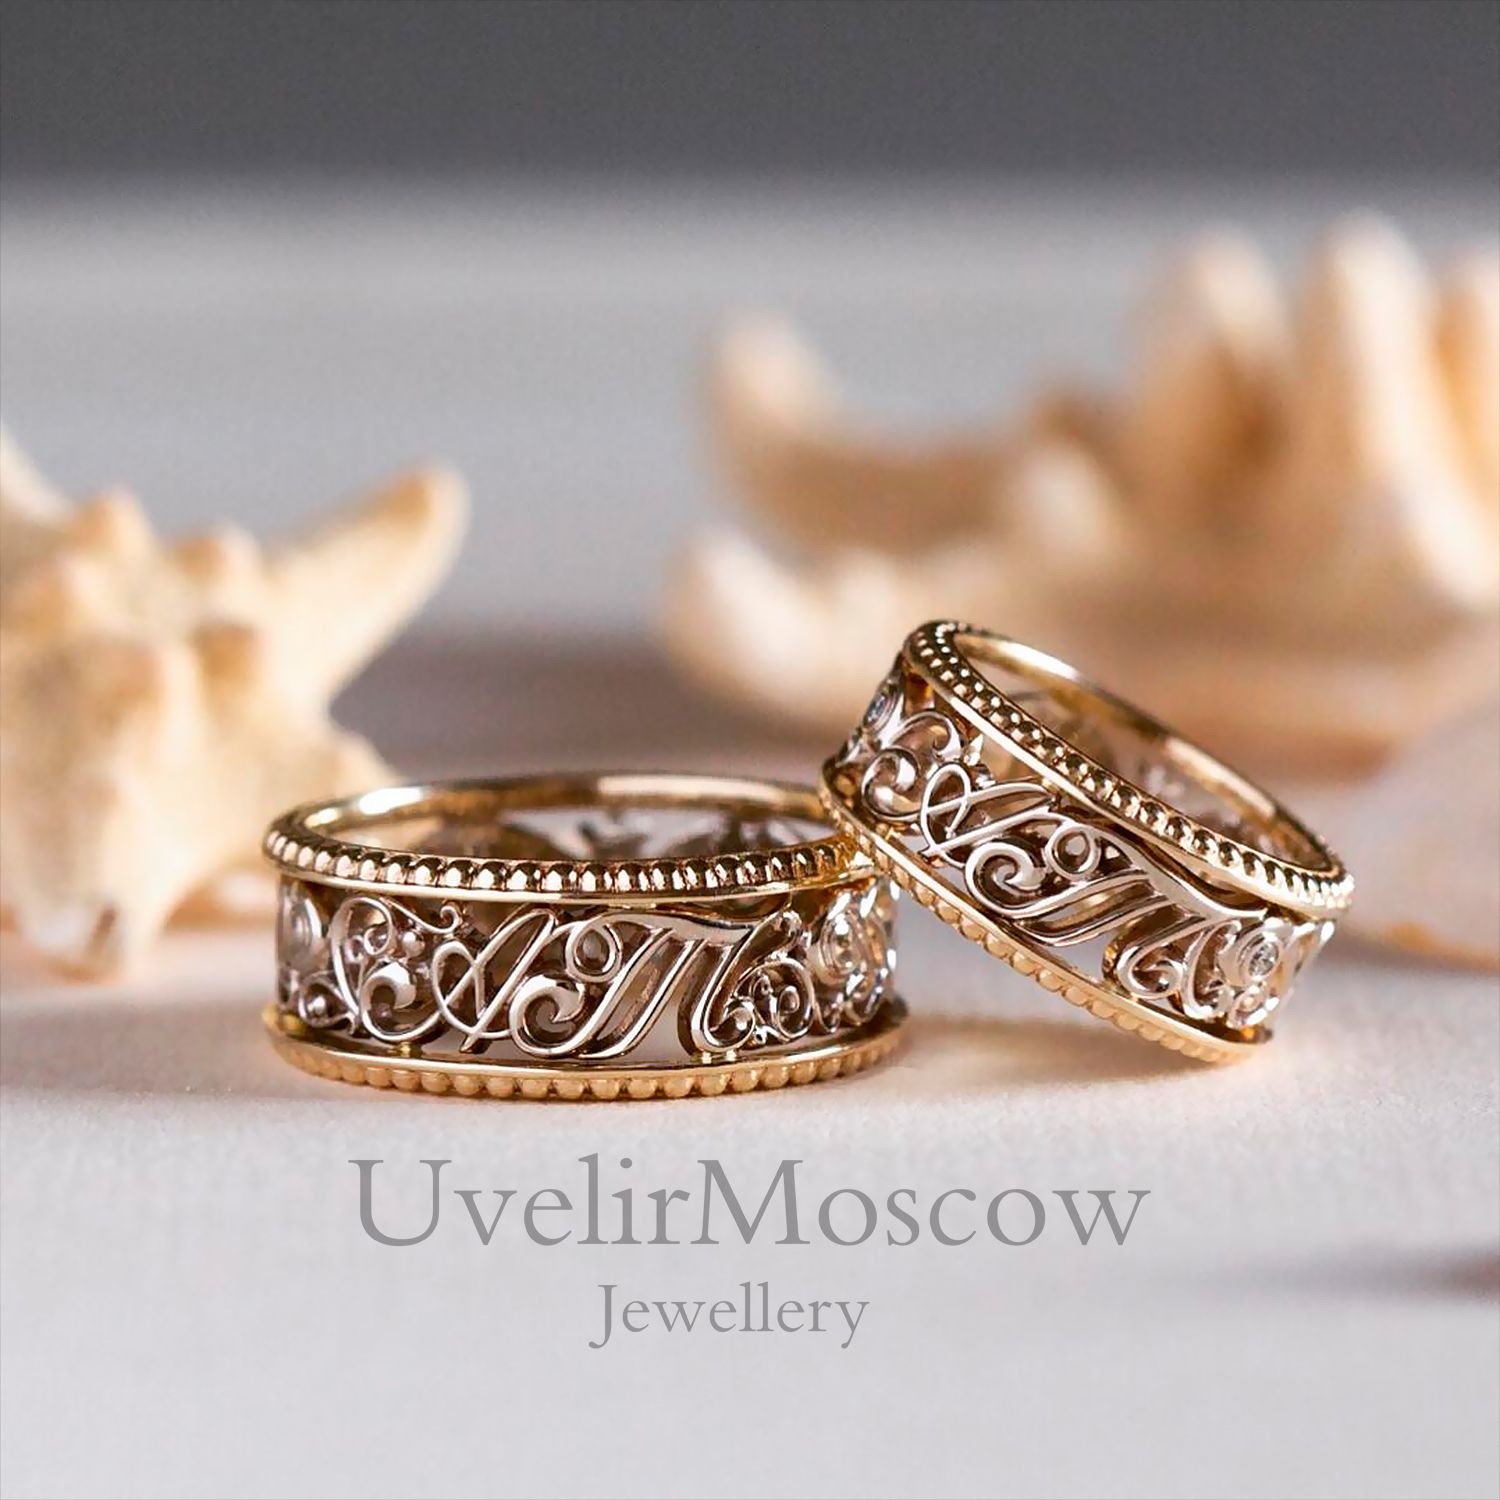 Парные обручальные кольца из комбинированного золота с объемным орнаментом